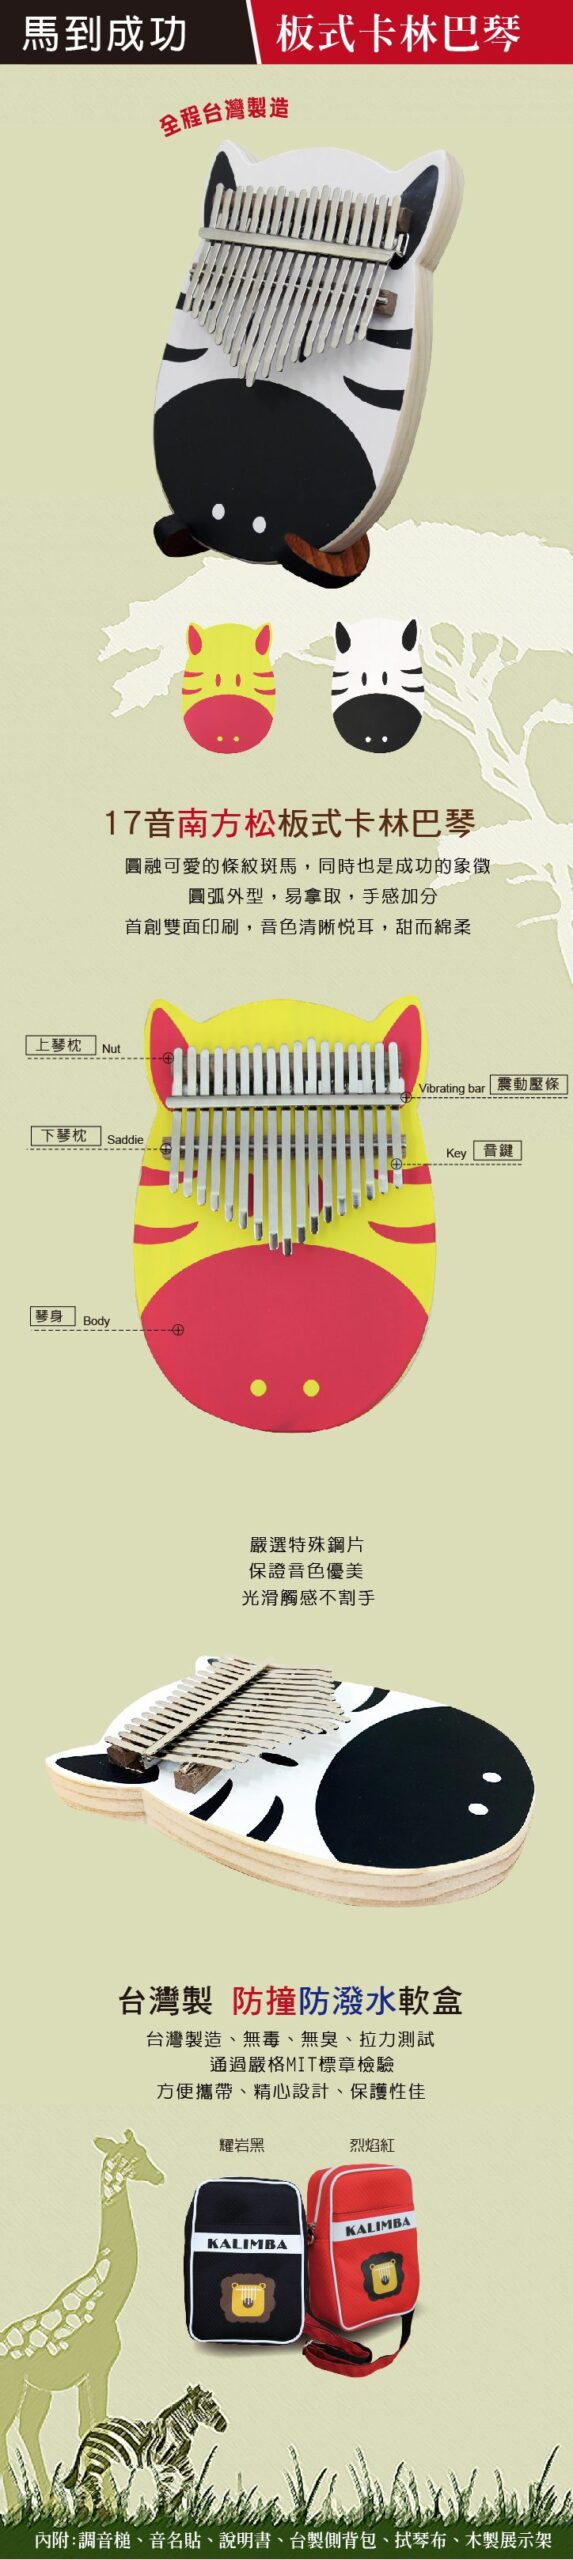 馬到成功 板式卡林巴 拇指琴 1350元 台灣製造 新品上市